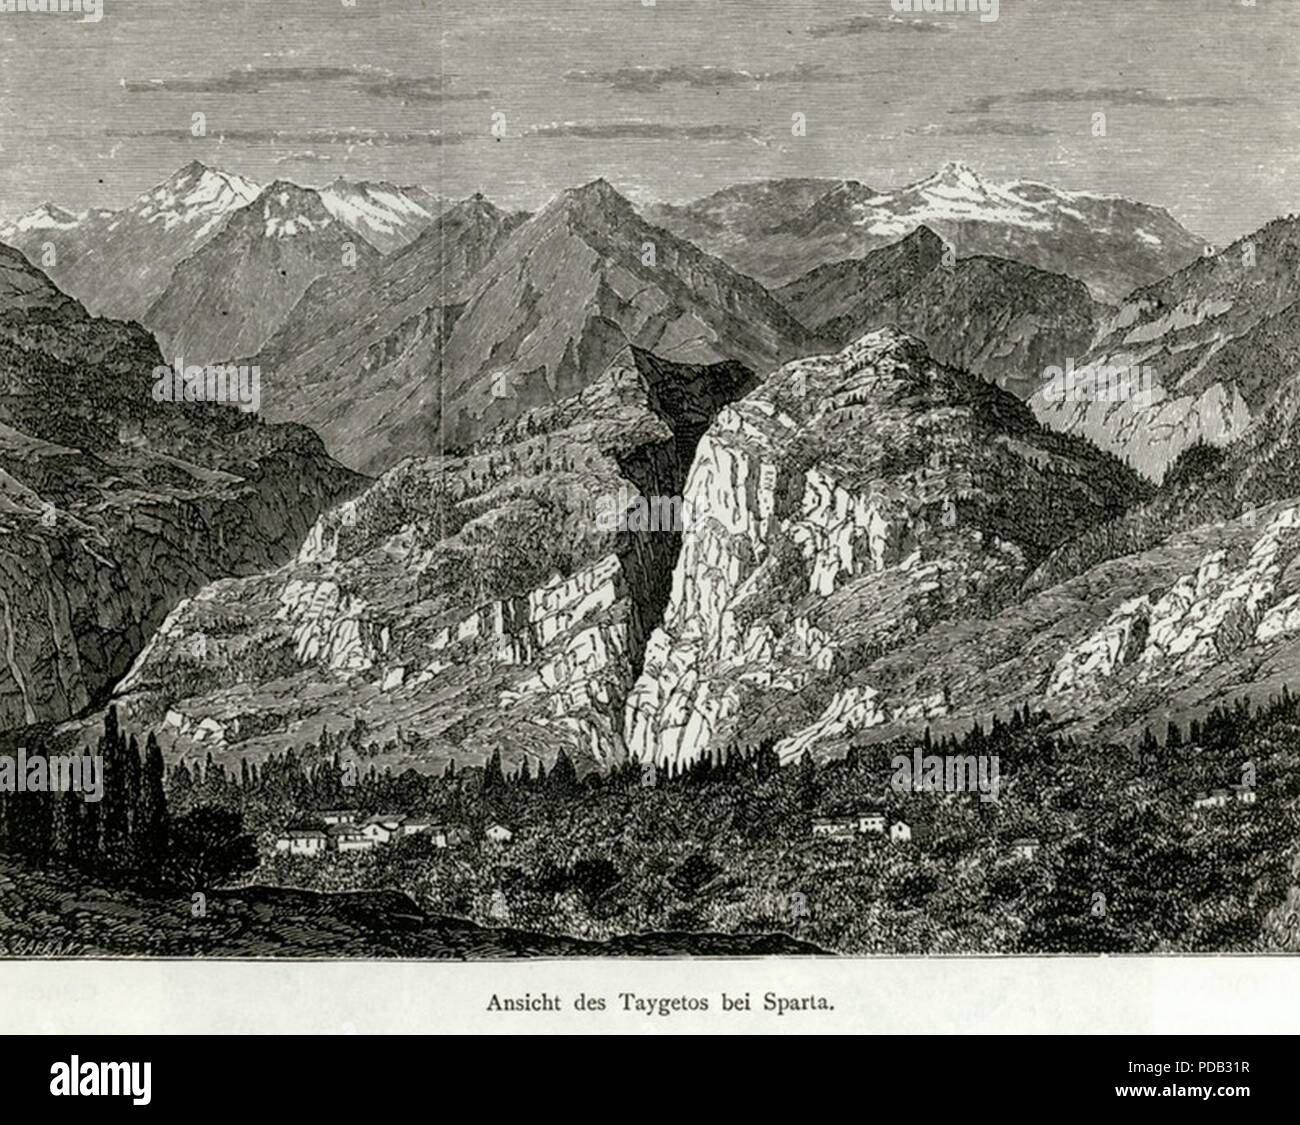 Ansicht des Taygetos bei Sparta - Schweiger Lerchenfeld Amand (freiherr Von) - 1887. Stock Photo